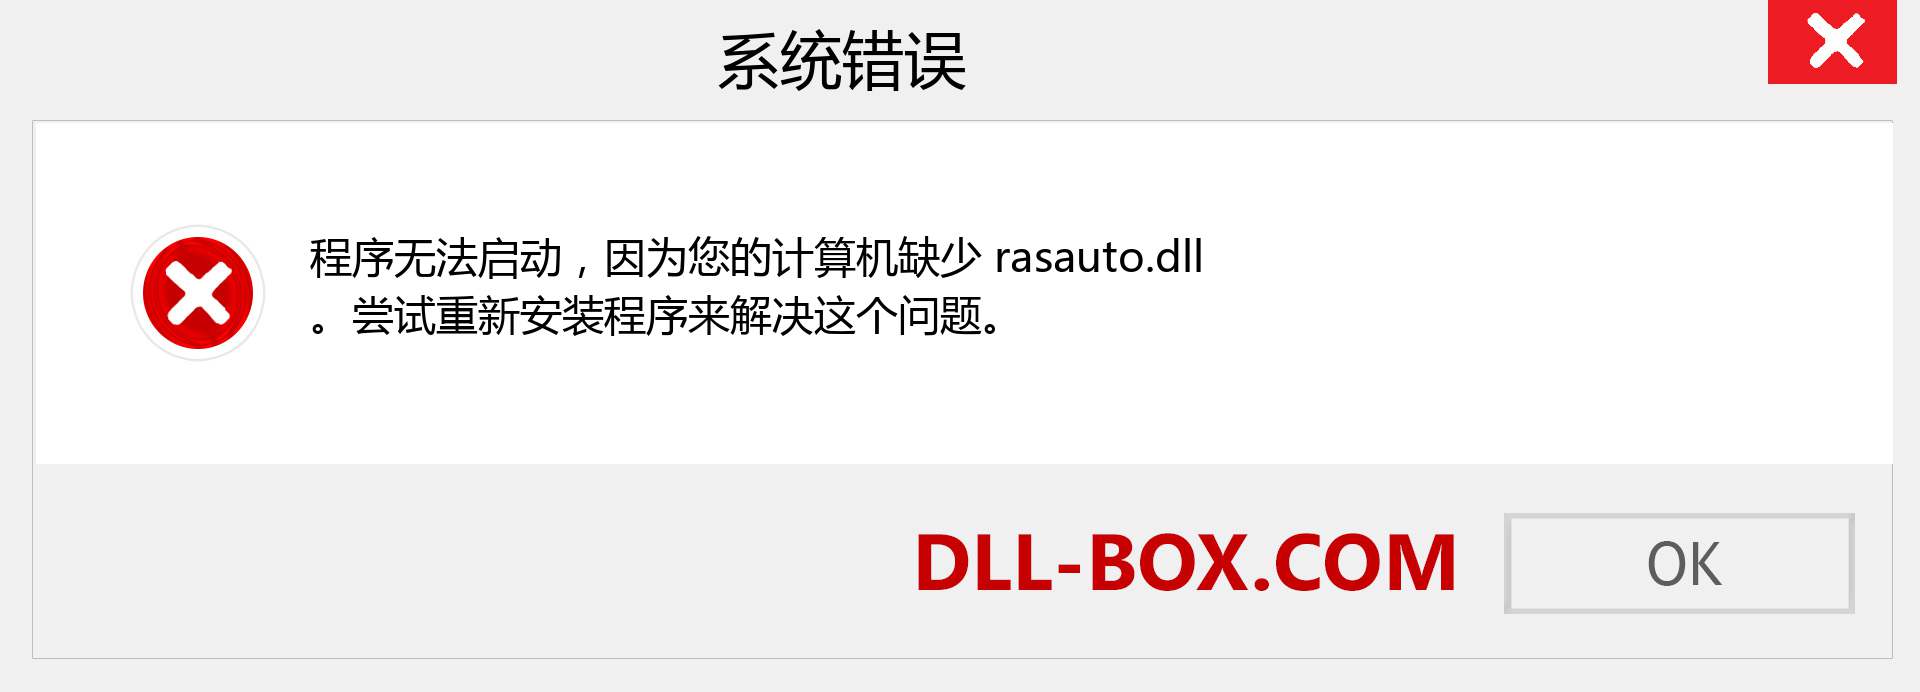 rasauto.dll 文件丢失？。 适用于 Windows 7、8、10 的下载 - 修复 Windows、照片、图像上的 rasauto dll 丢失错误